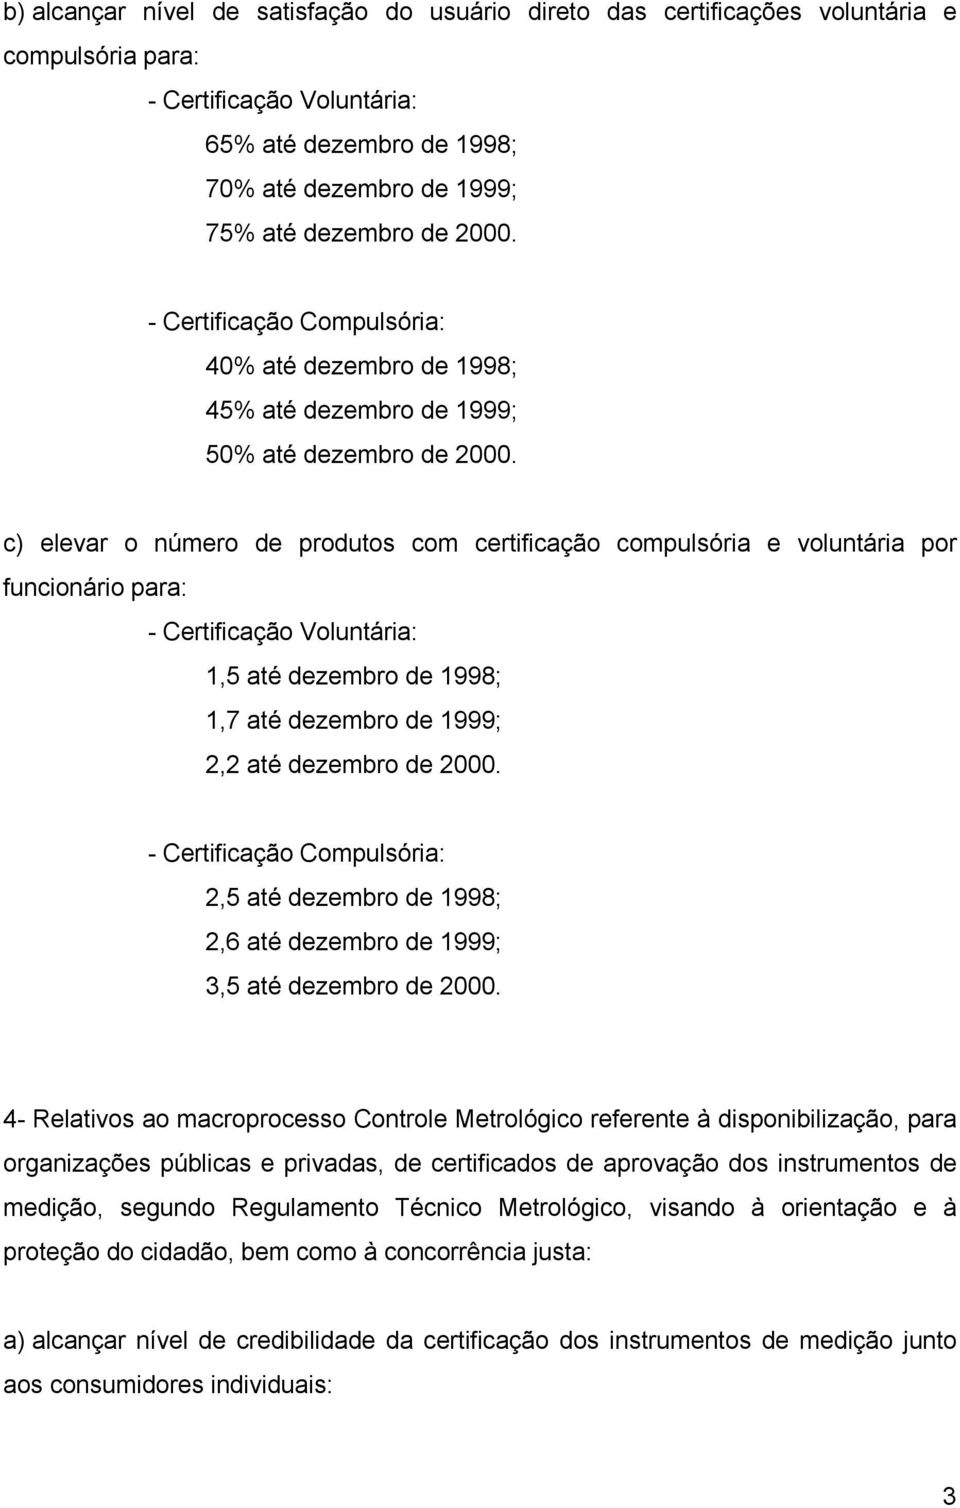 c) elevar o número de produtos com certificação compulsória e voluntária por funcionário para: - Certificação Voluntária: 1,5 até dezembro de 1998; 1,7 até dezembro de 1999; 2,2 até dezembro de 2000.